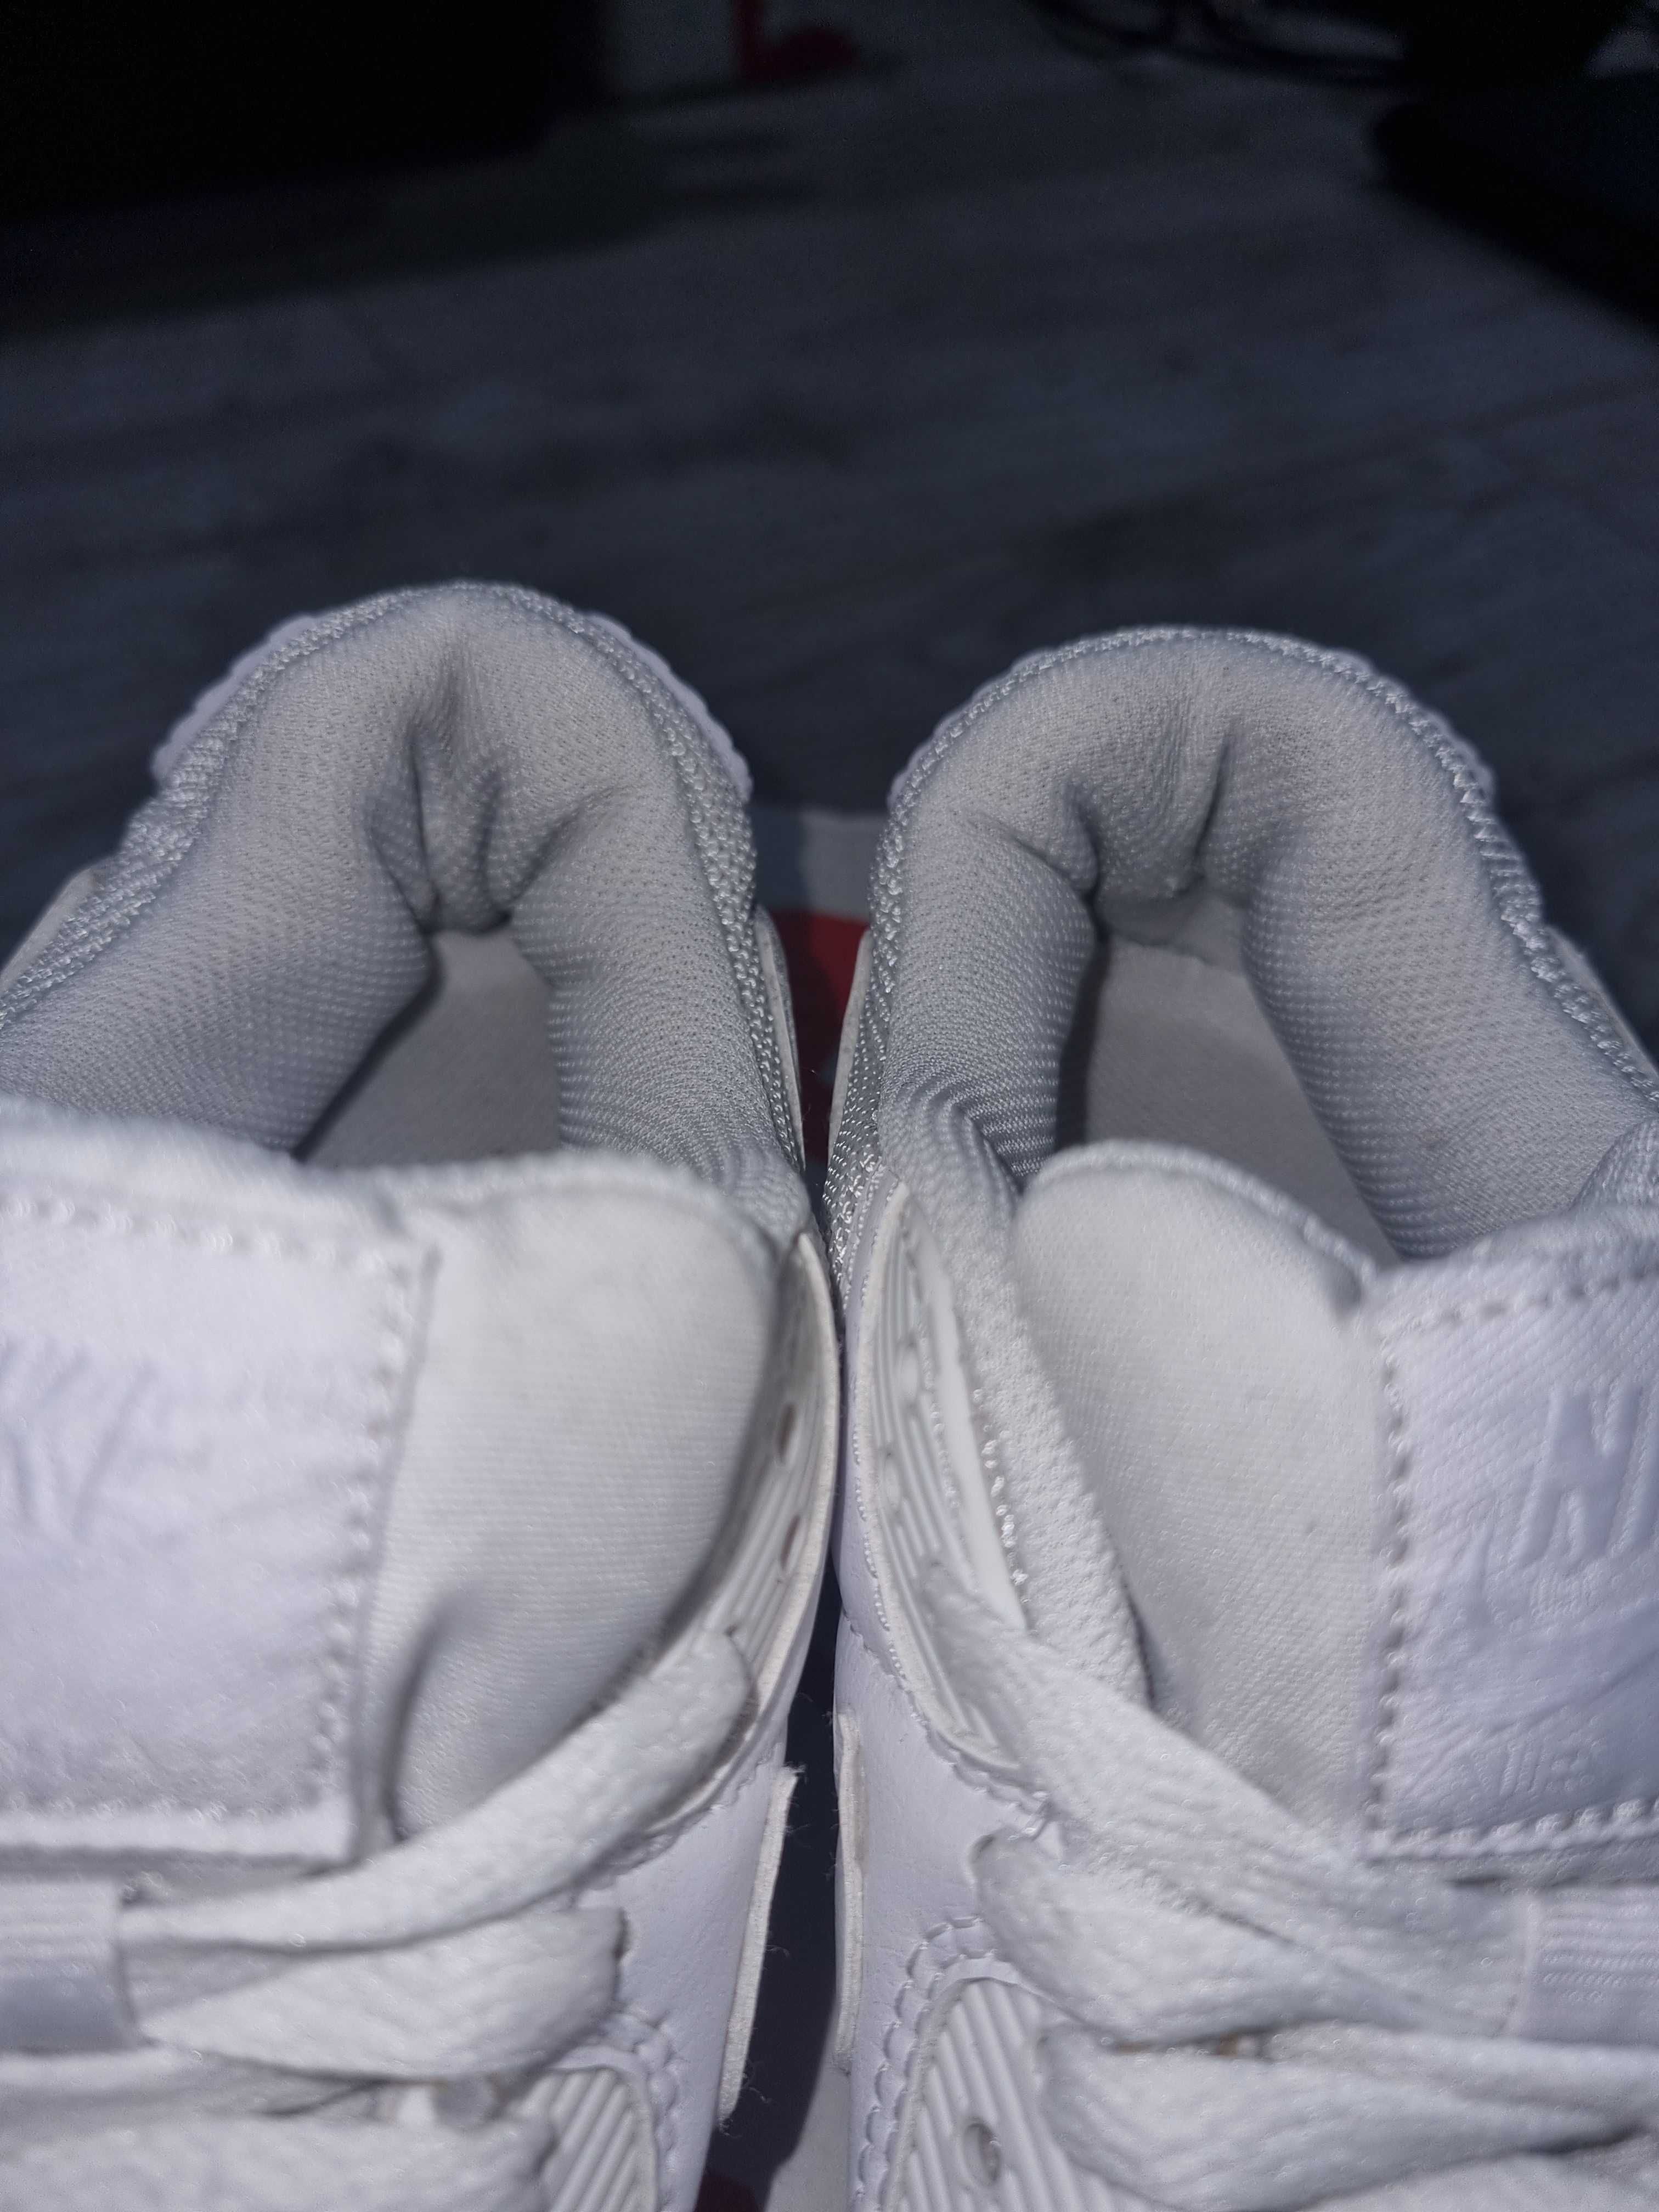 Białe buty NIKE Air Max 90, oryginalne, 38,5 (24,5 cm)